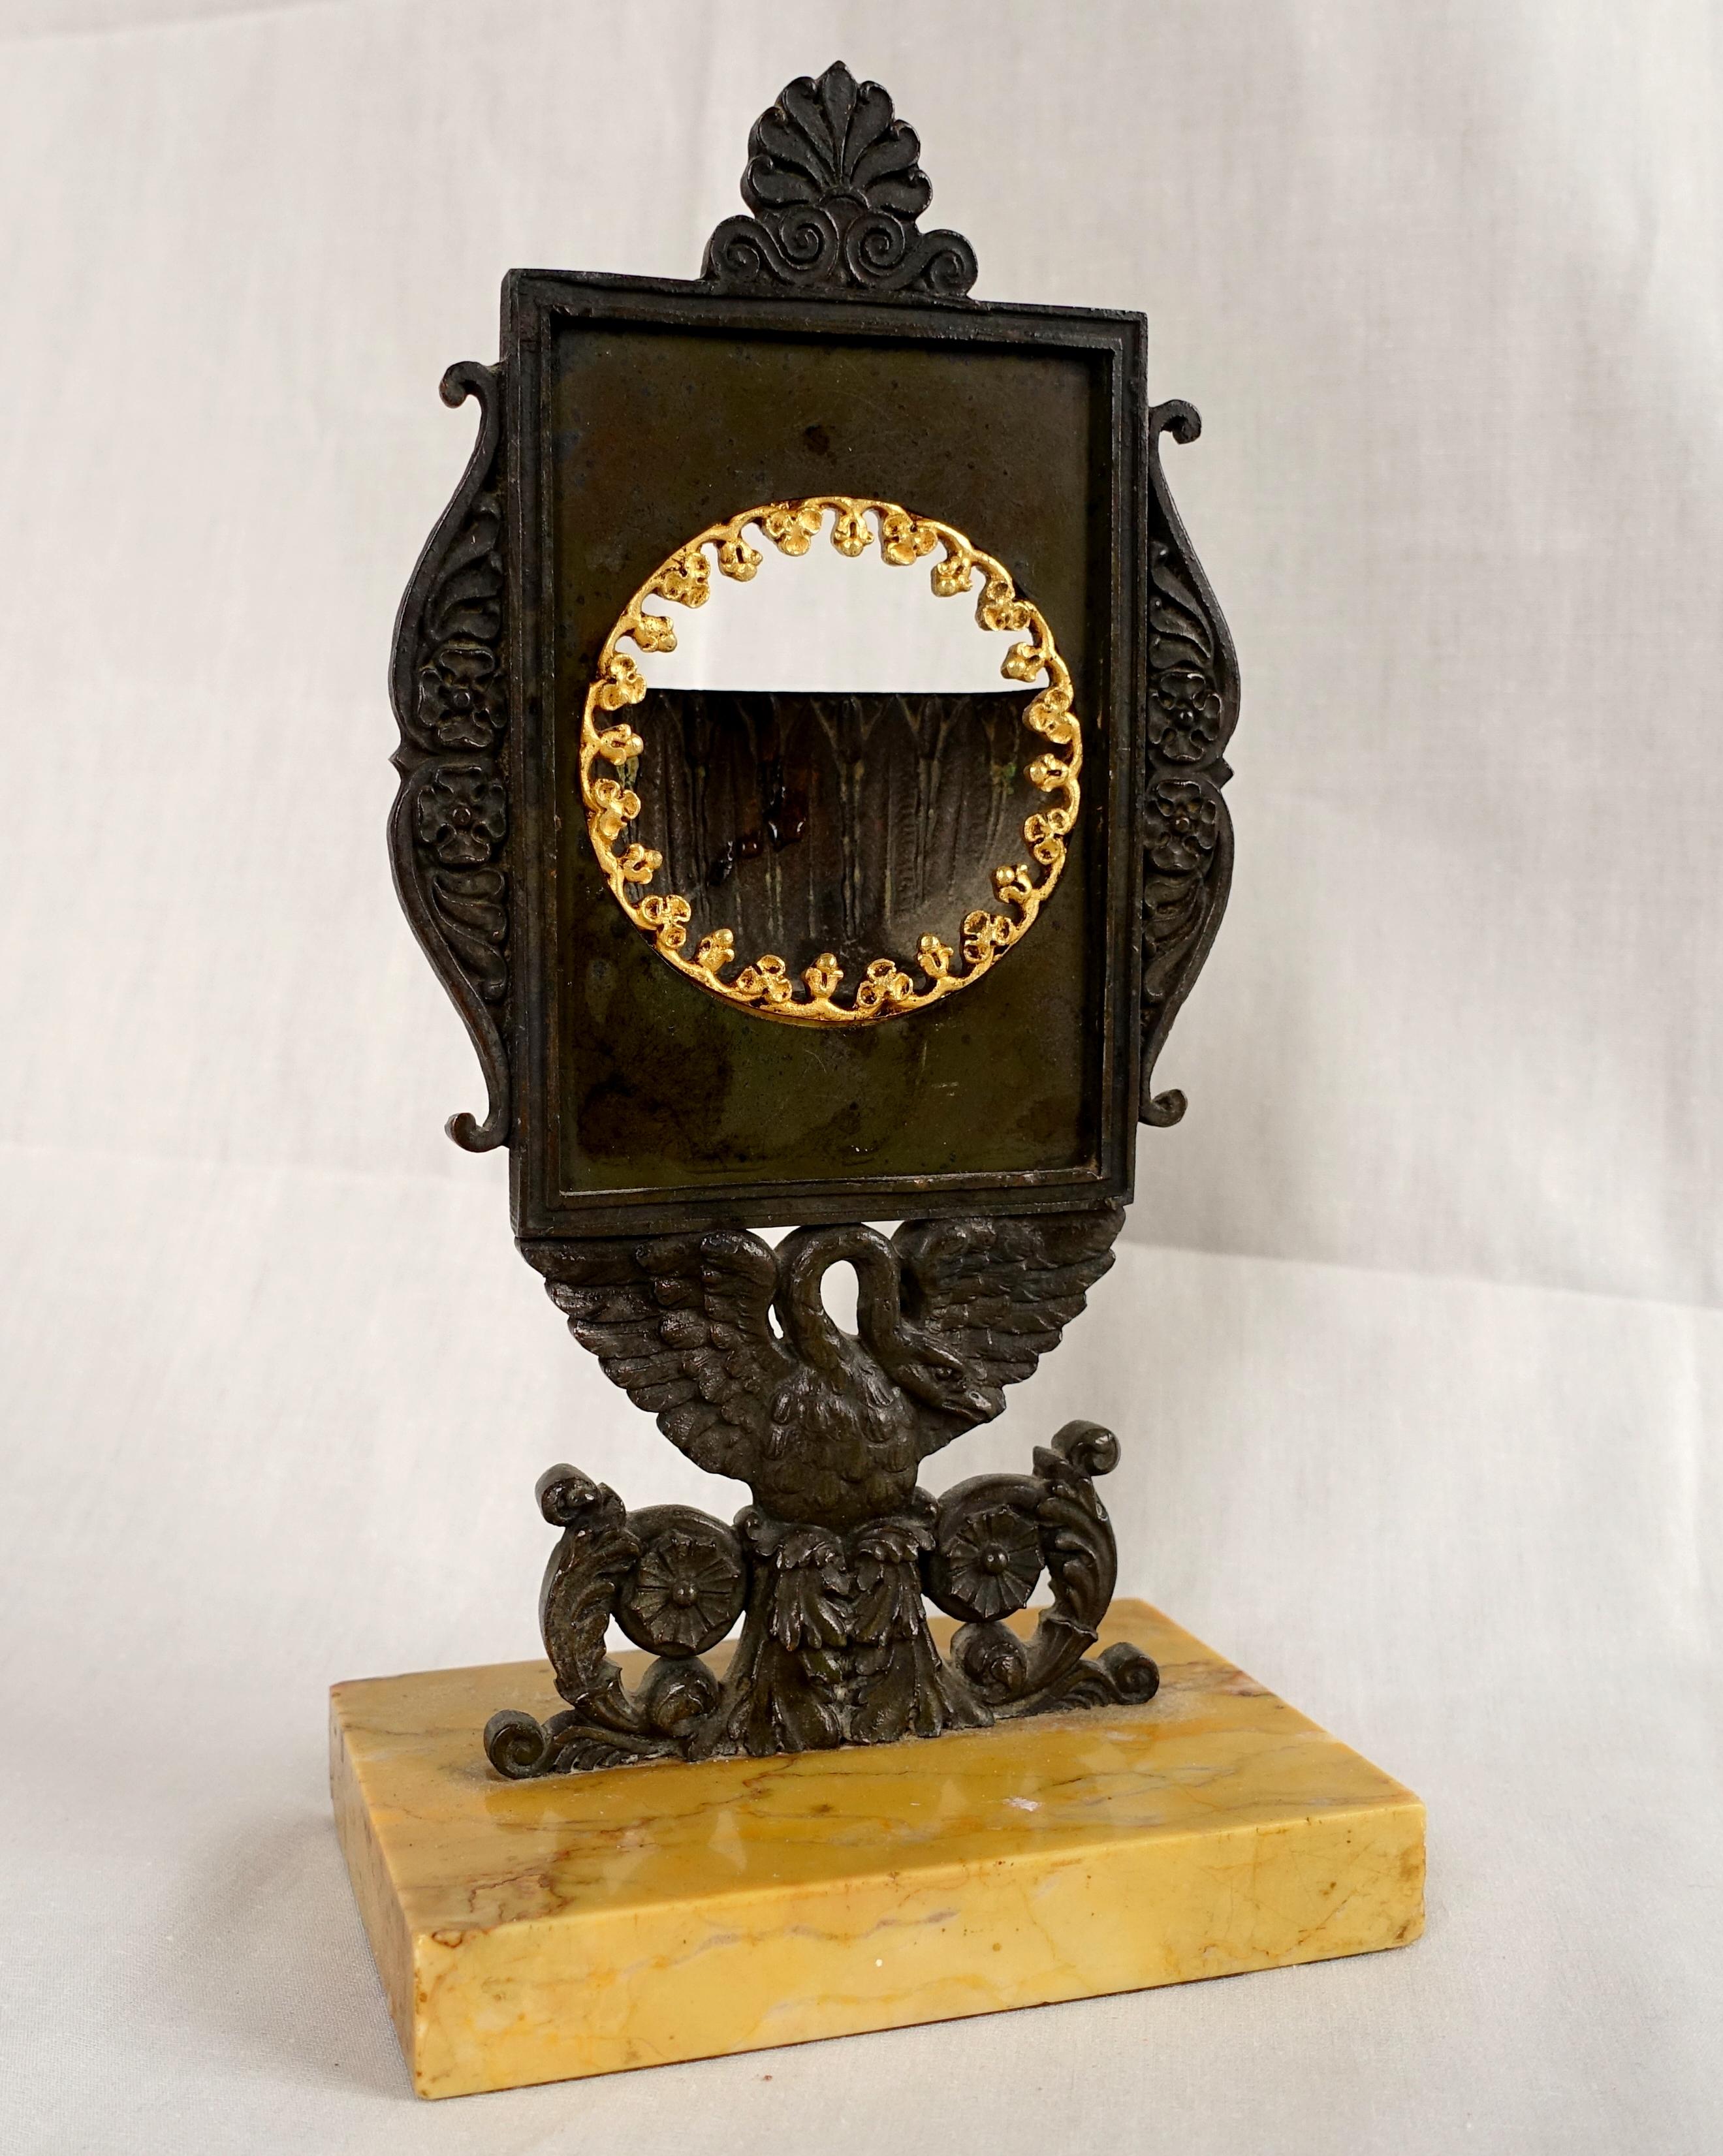 Ancien porte-montre Empire français, début du 19ème siècle vers 1820.
Le porte-montre permet de convertir une montre de poche ouverte en horloge de bureau ou de table.
Beau et rare modèle représentant un bouclier en bronze patiné tenu par un cygne